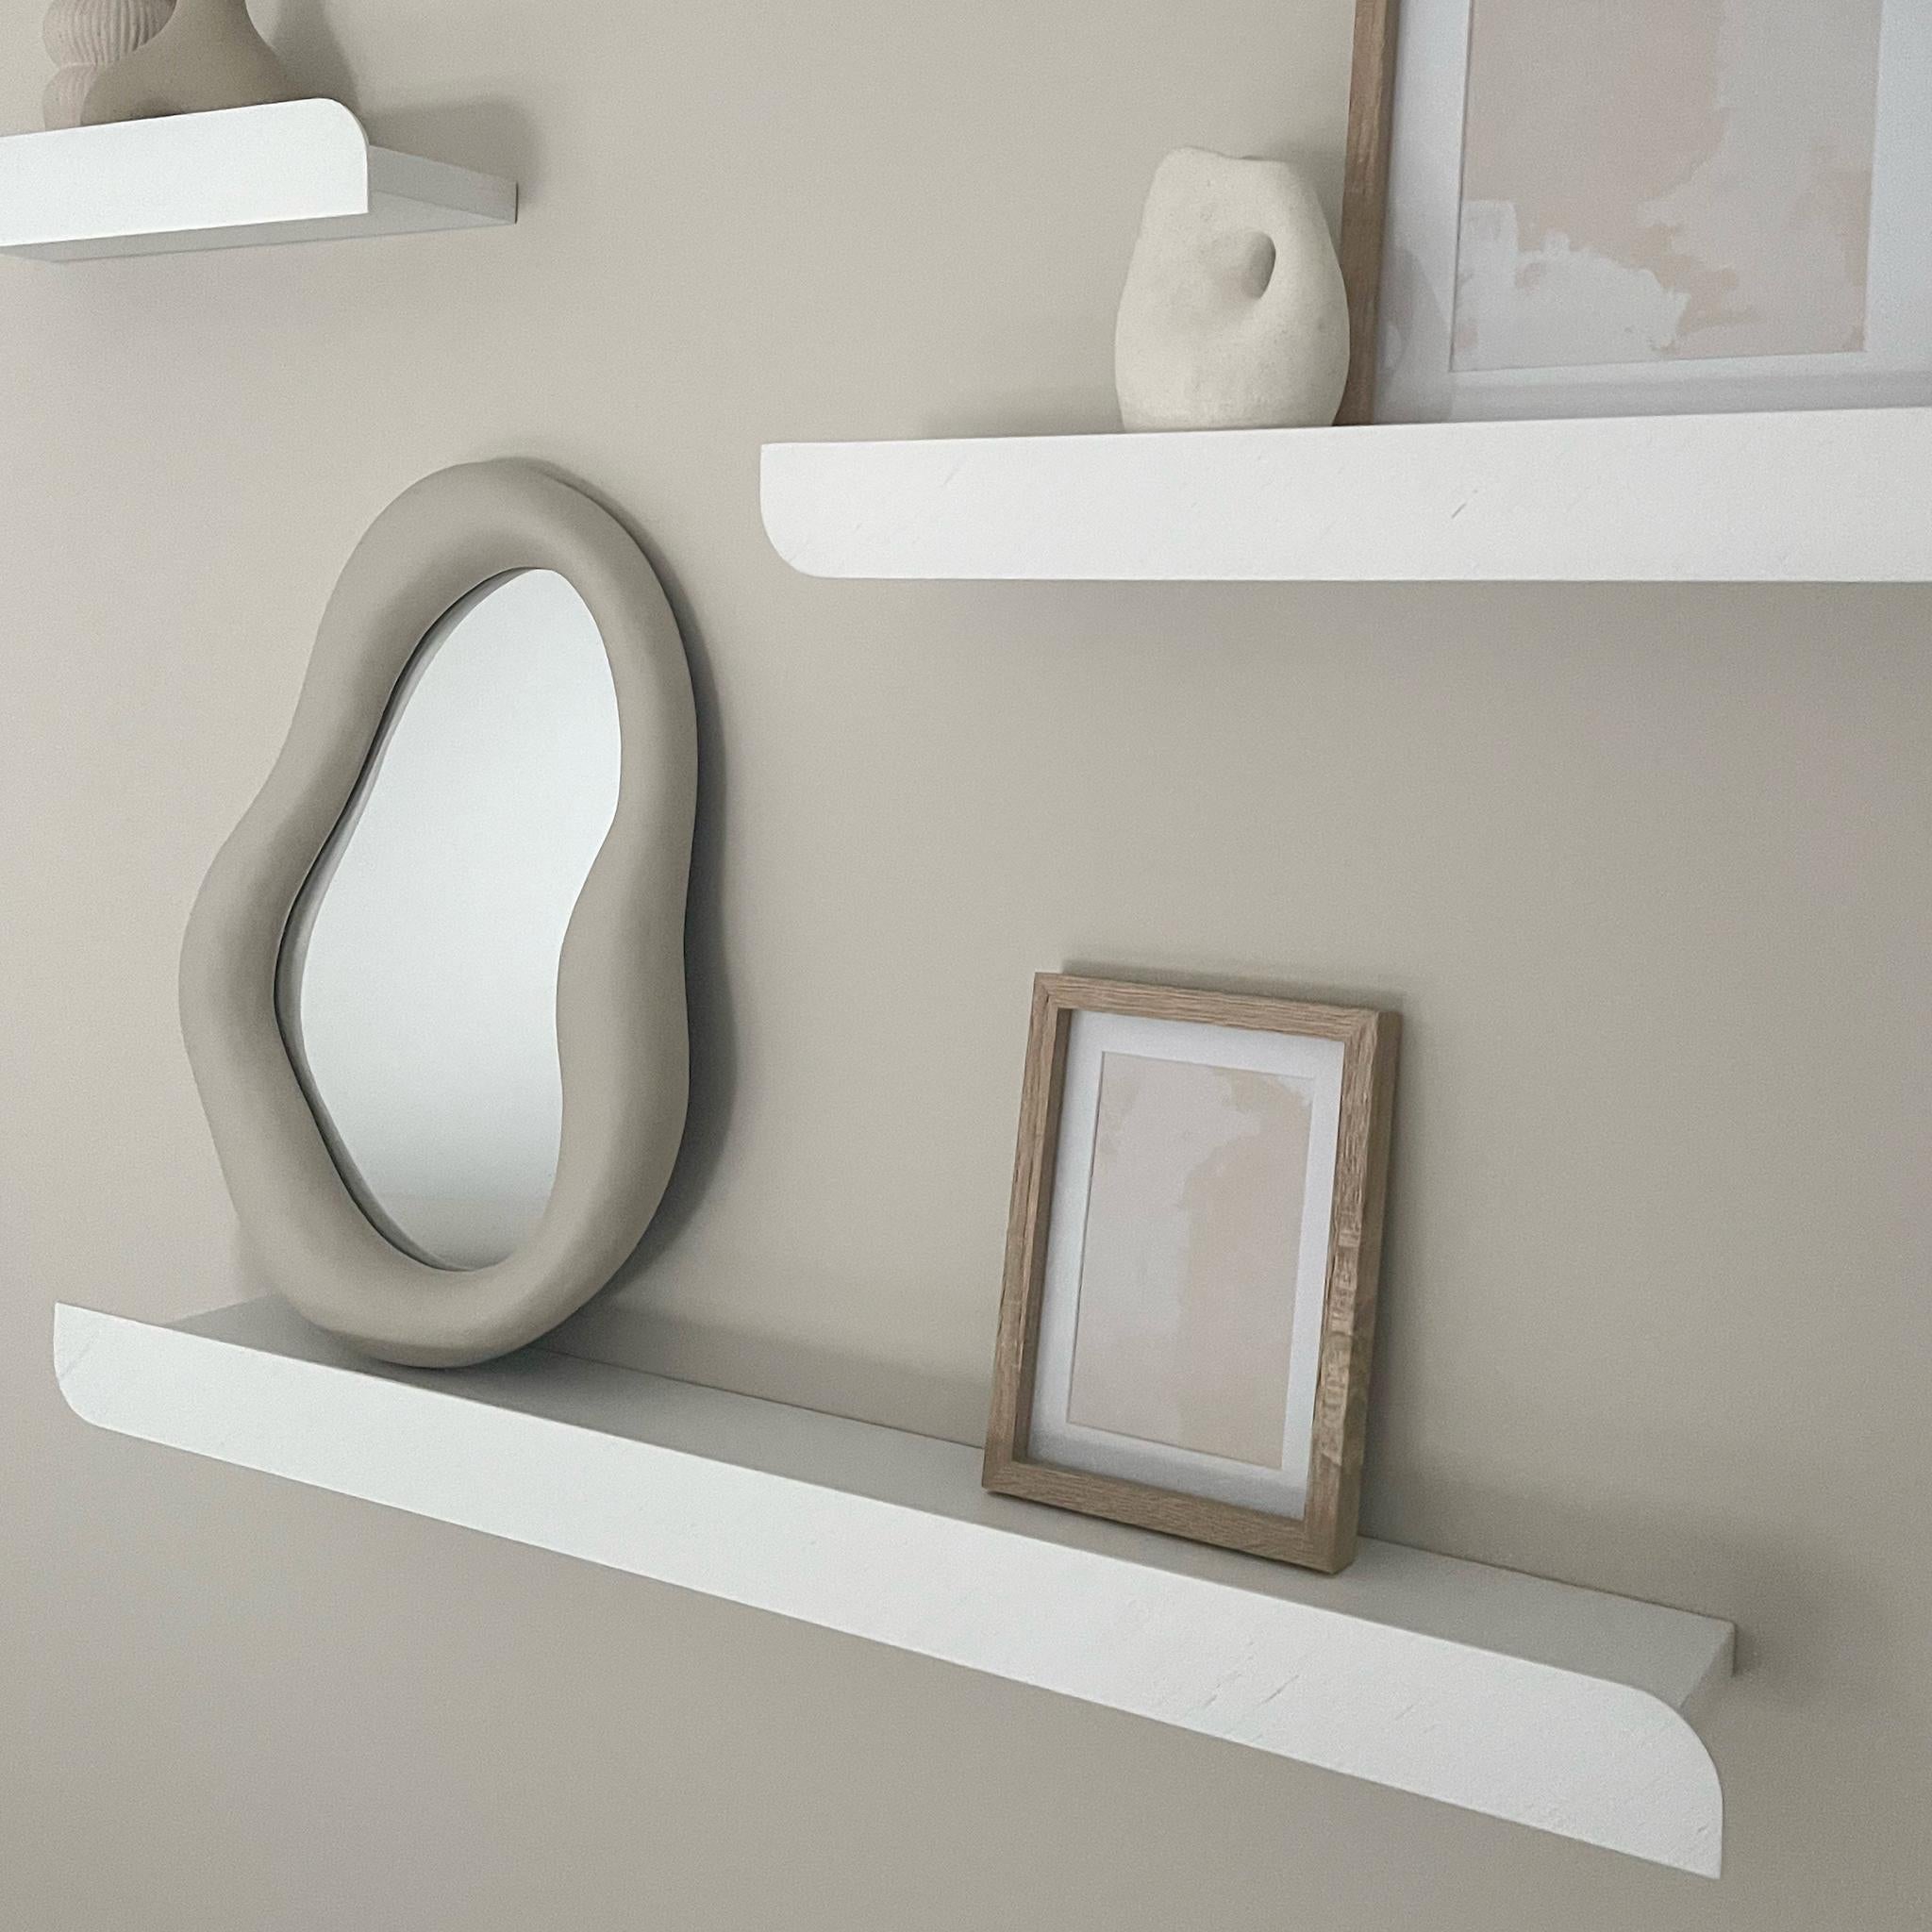 Unser Regal Cielo ist ein einzigartiges, minimalistisches Wandelement, das sich perfekt für die Platzierung von Dekorationen eignet. Das sorgfältige Design hebt die Holzmaserung hervor und verfügt über eine vordere Leiste. Das Design wird durch die